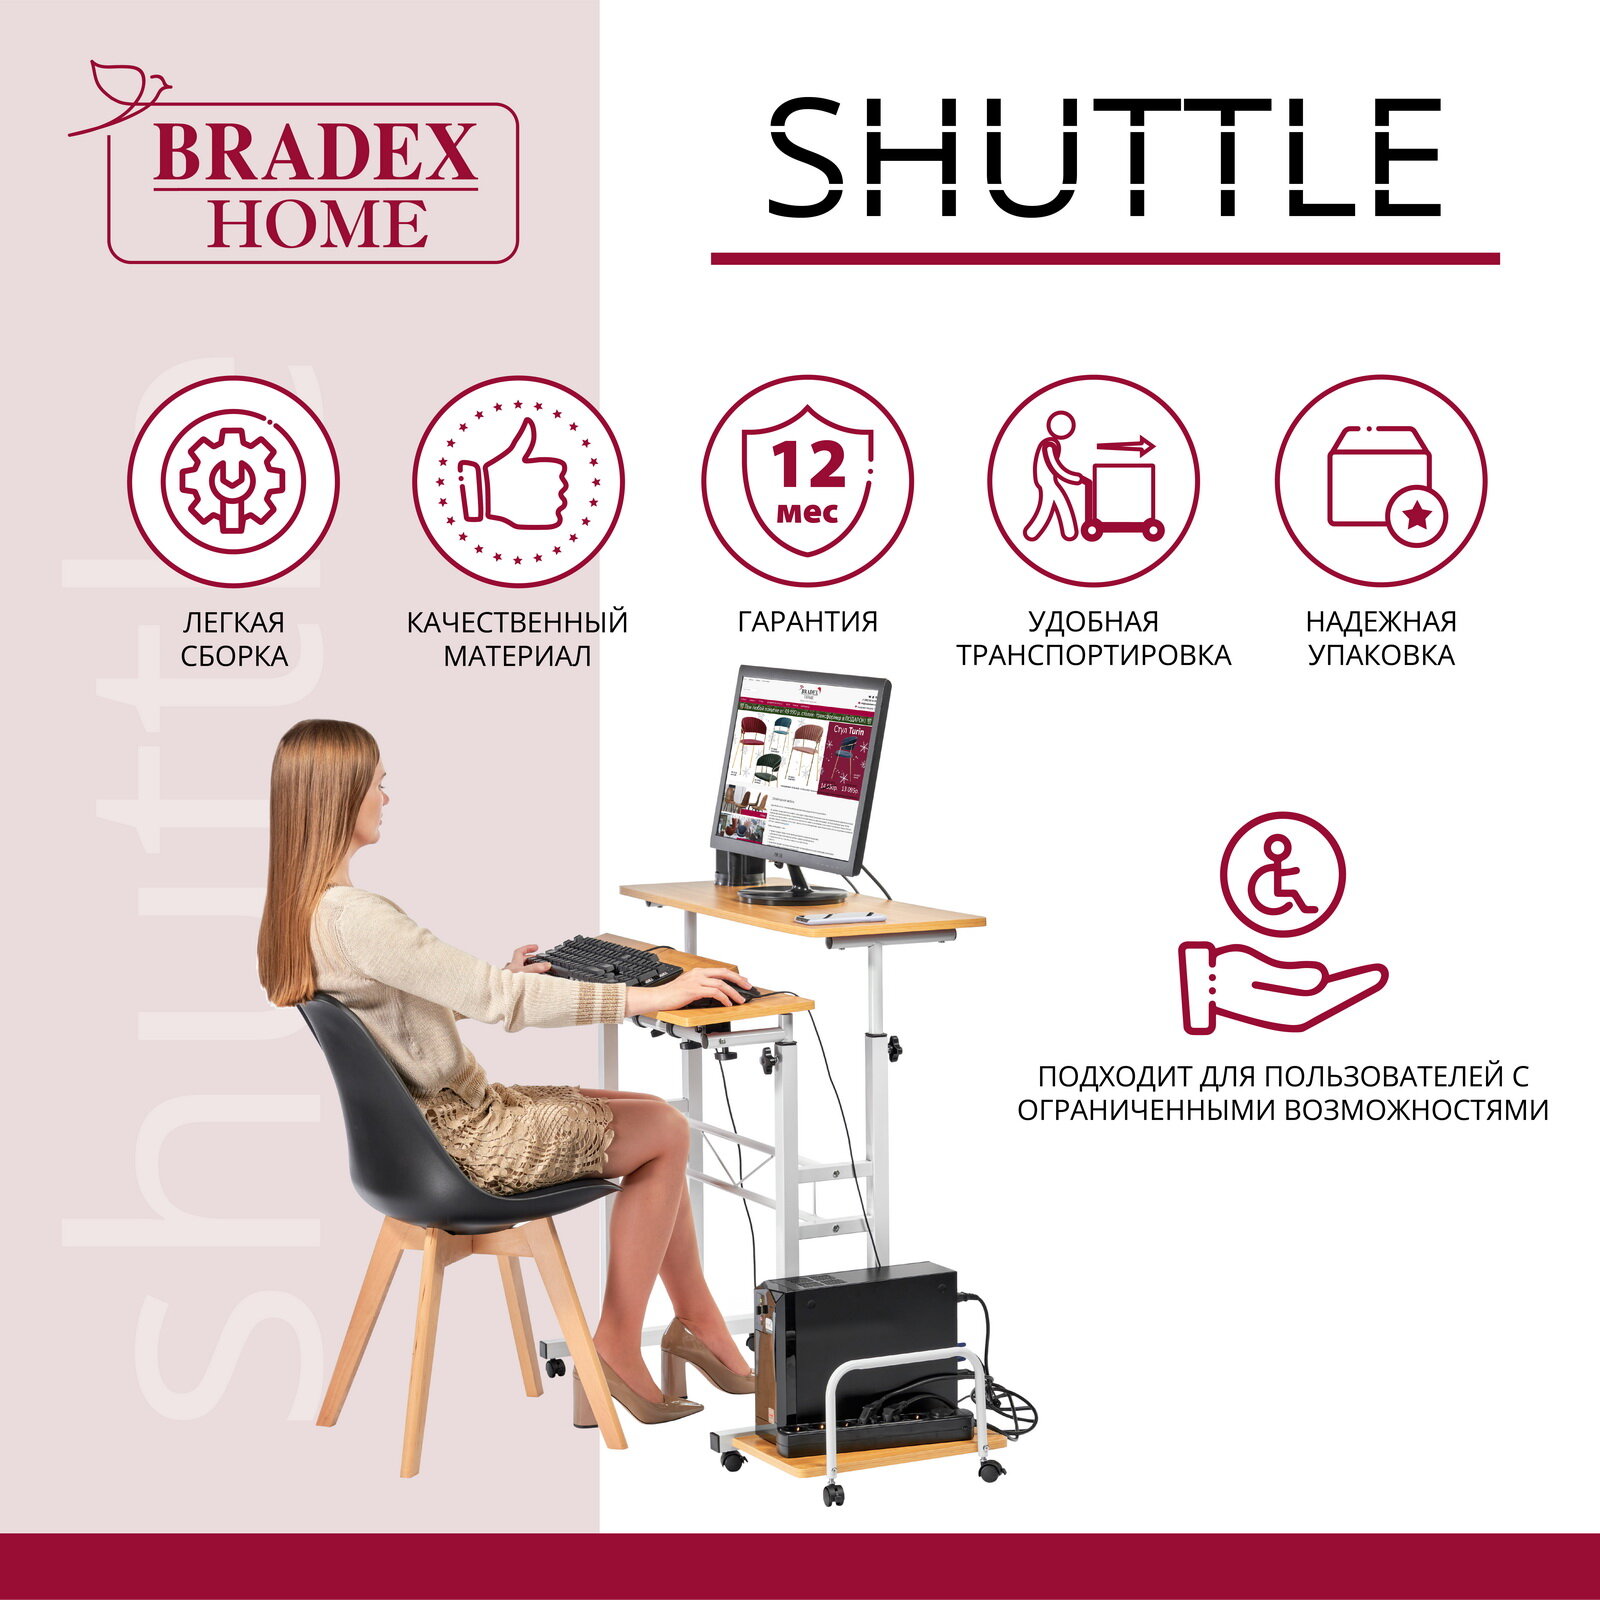 Стол компьютерный Shuttle Bradex Home FR 0690 (DK) - фото №7